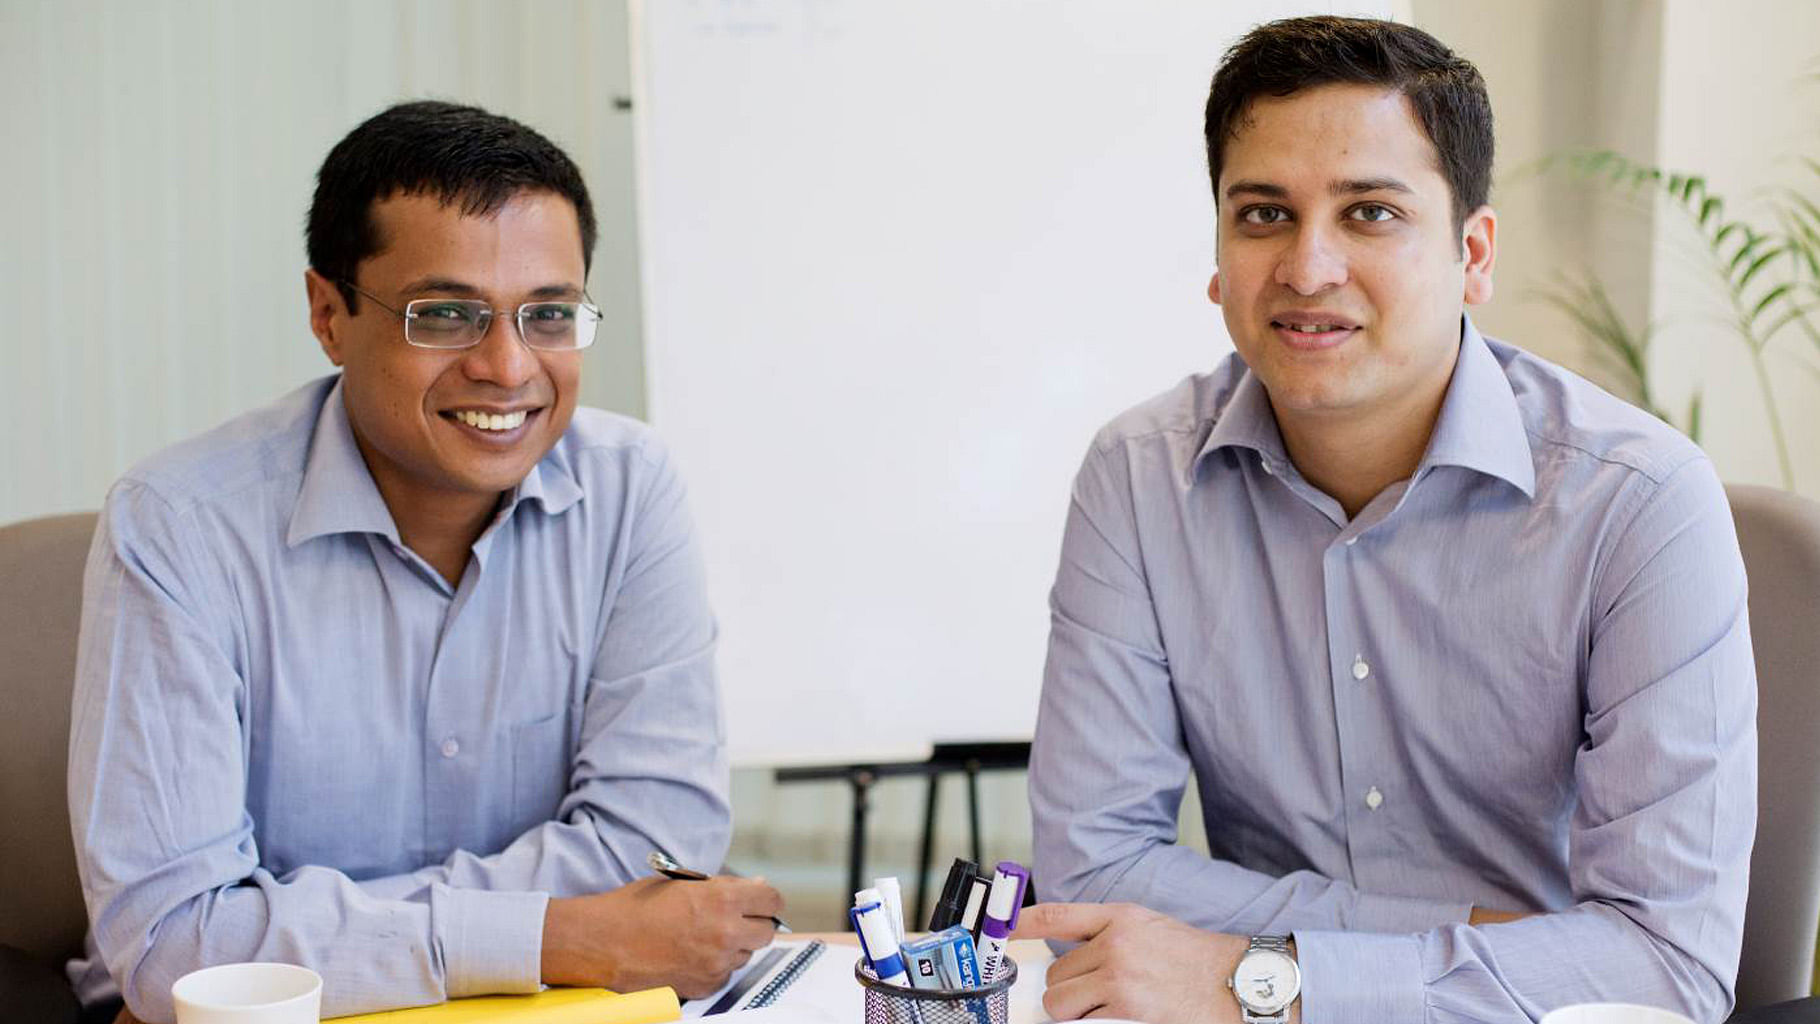 Sachin Bansal (left) and Binny Bansal (right). (Photo: <a href="http://stories.flipkart.com/flipkart-management-structure/">Flipkart</a>)